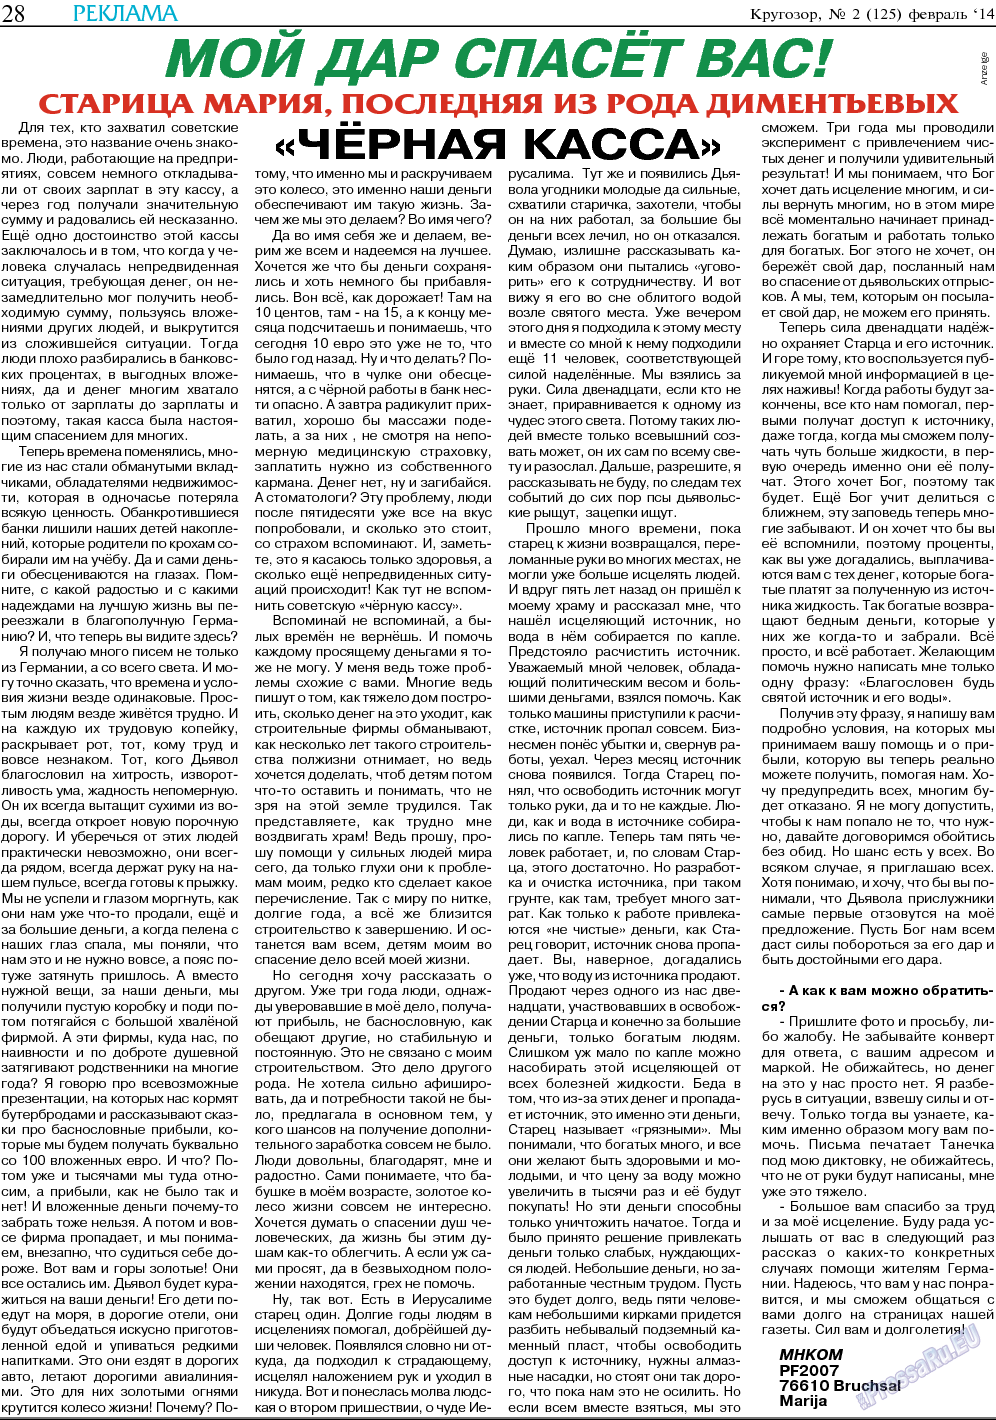 Кругозор, газета. 2014 №2 стр.28